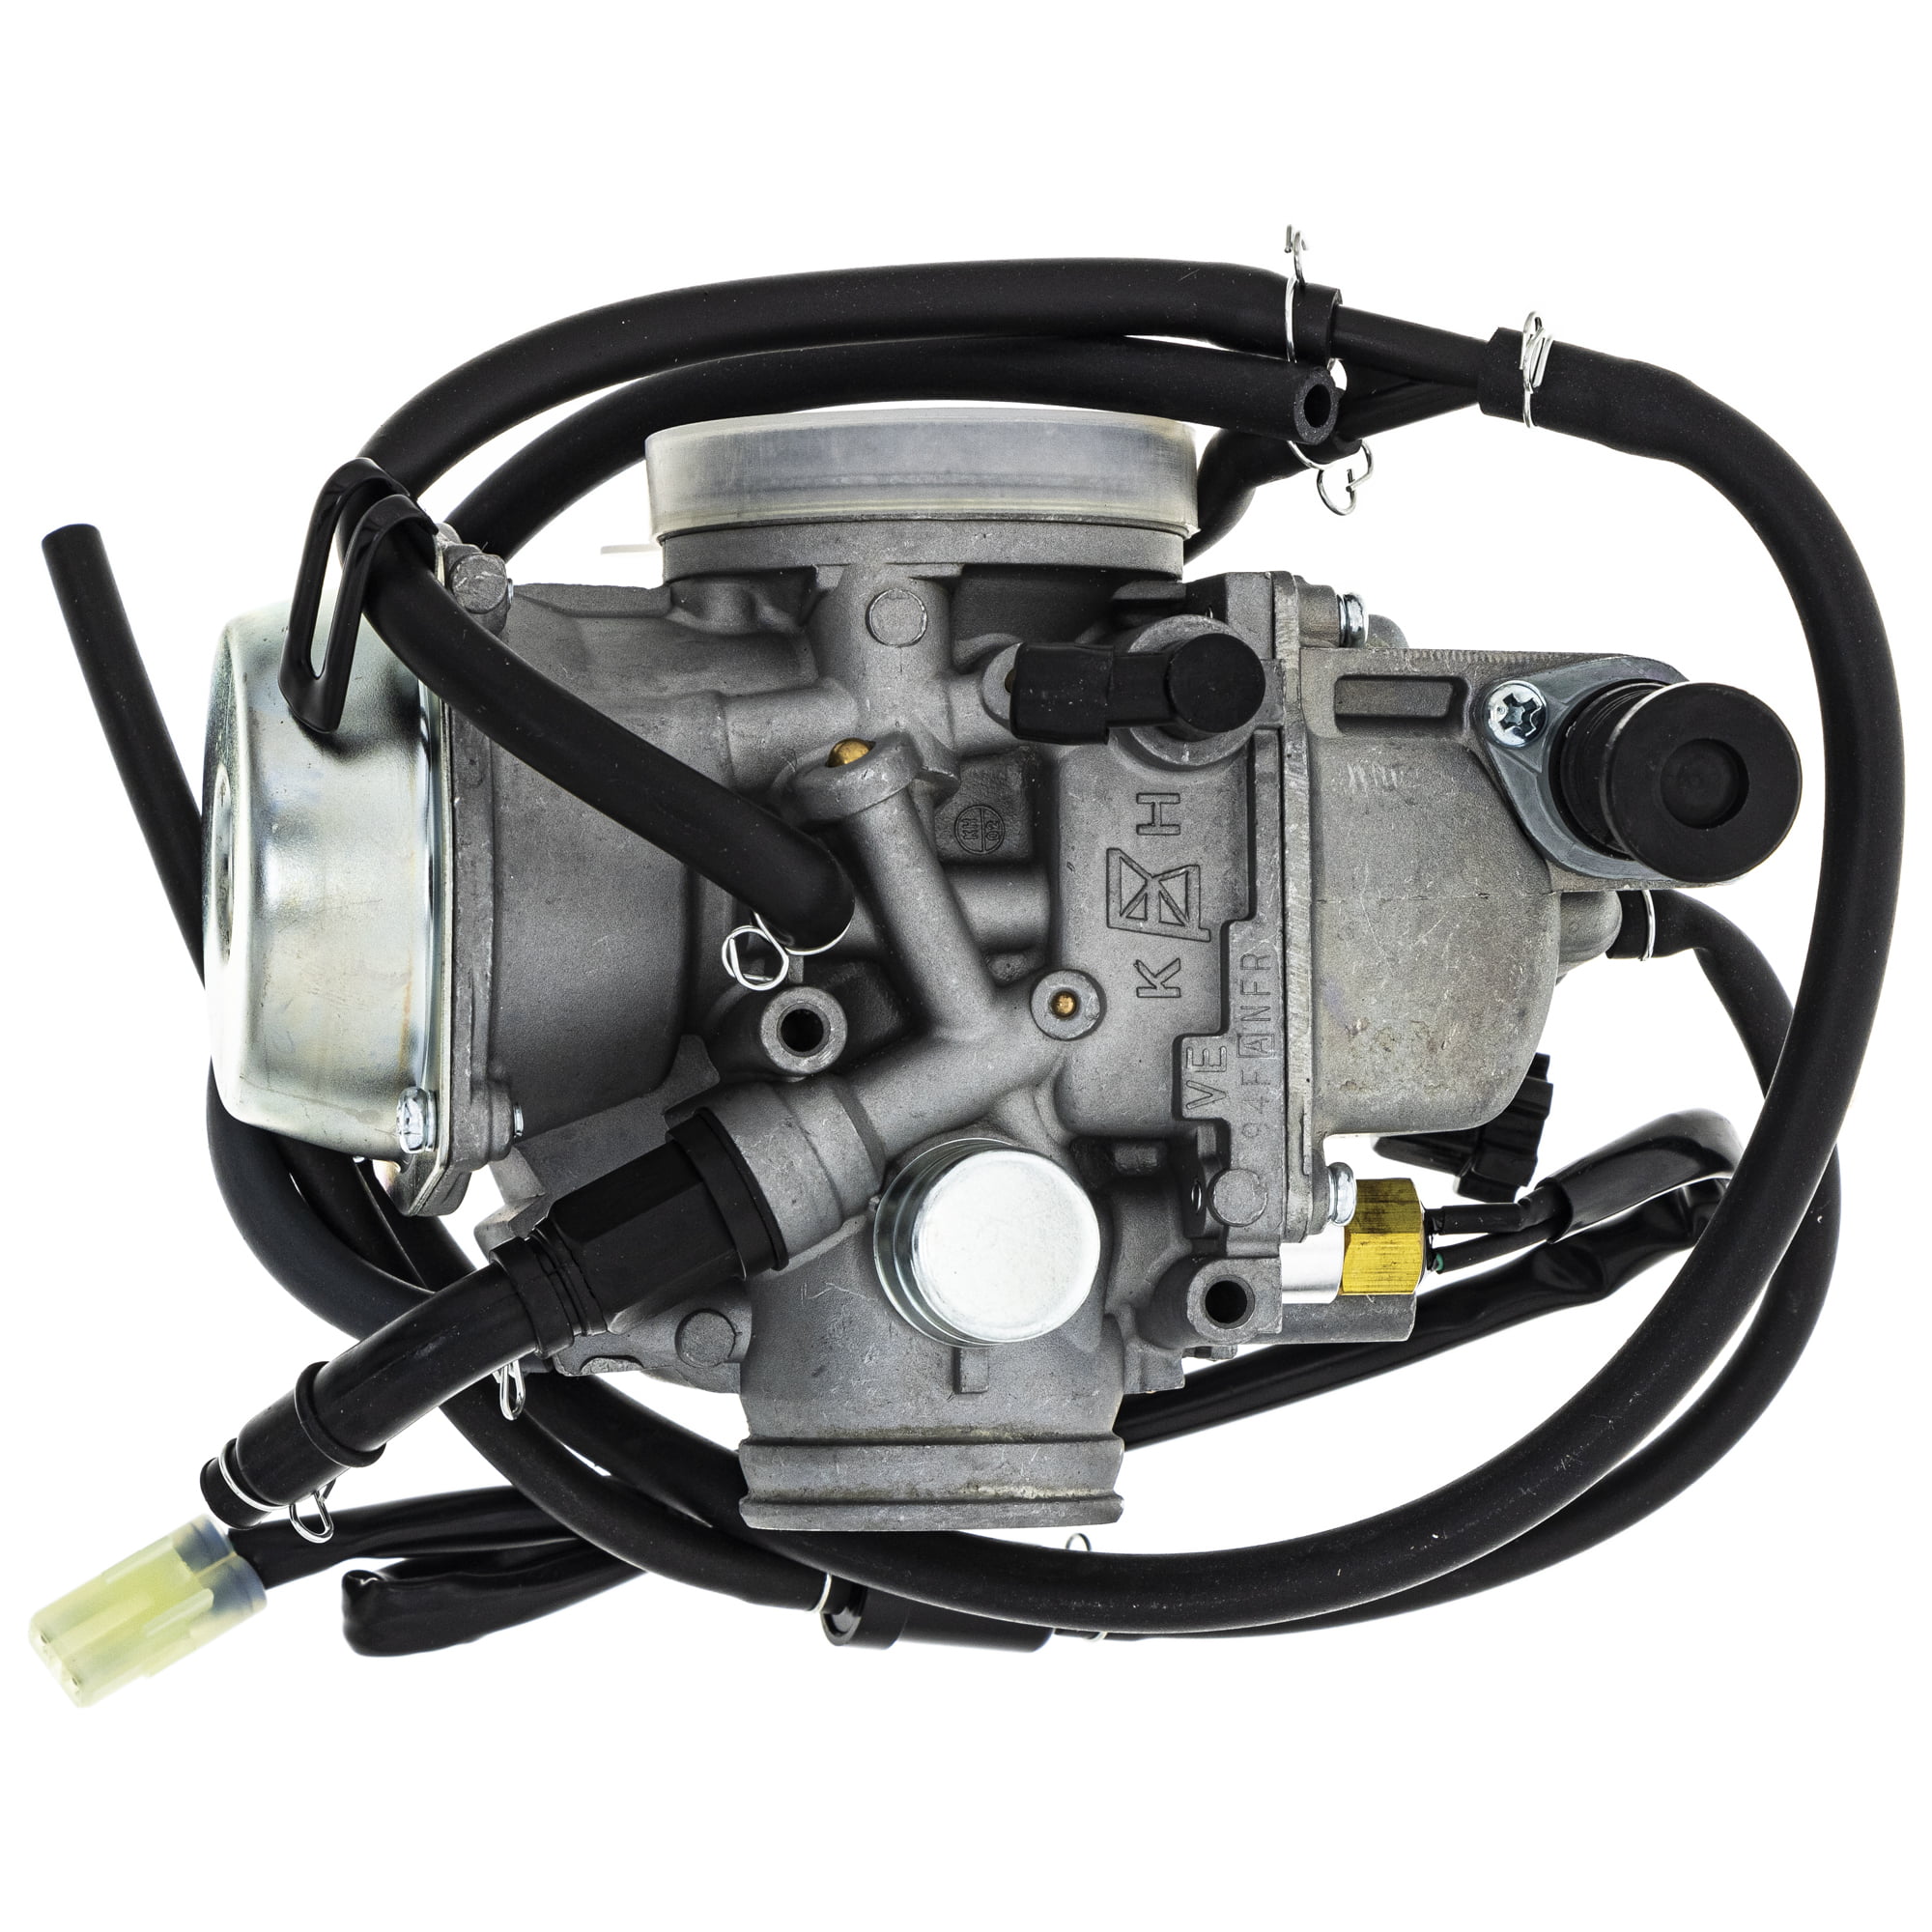 Carburetor Carb For Honda TRX350 Rancher 2000-2006 16100-HN5-M41 Fourtrax 86-87 